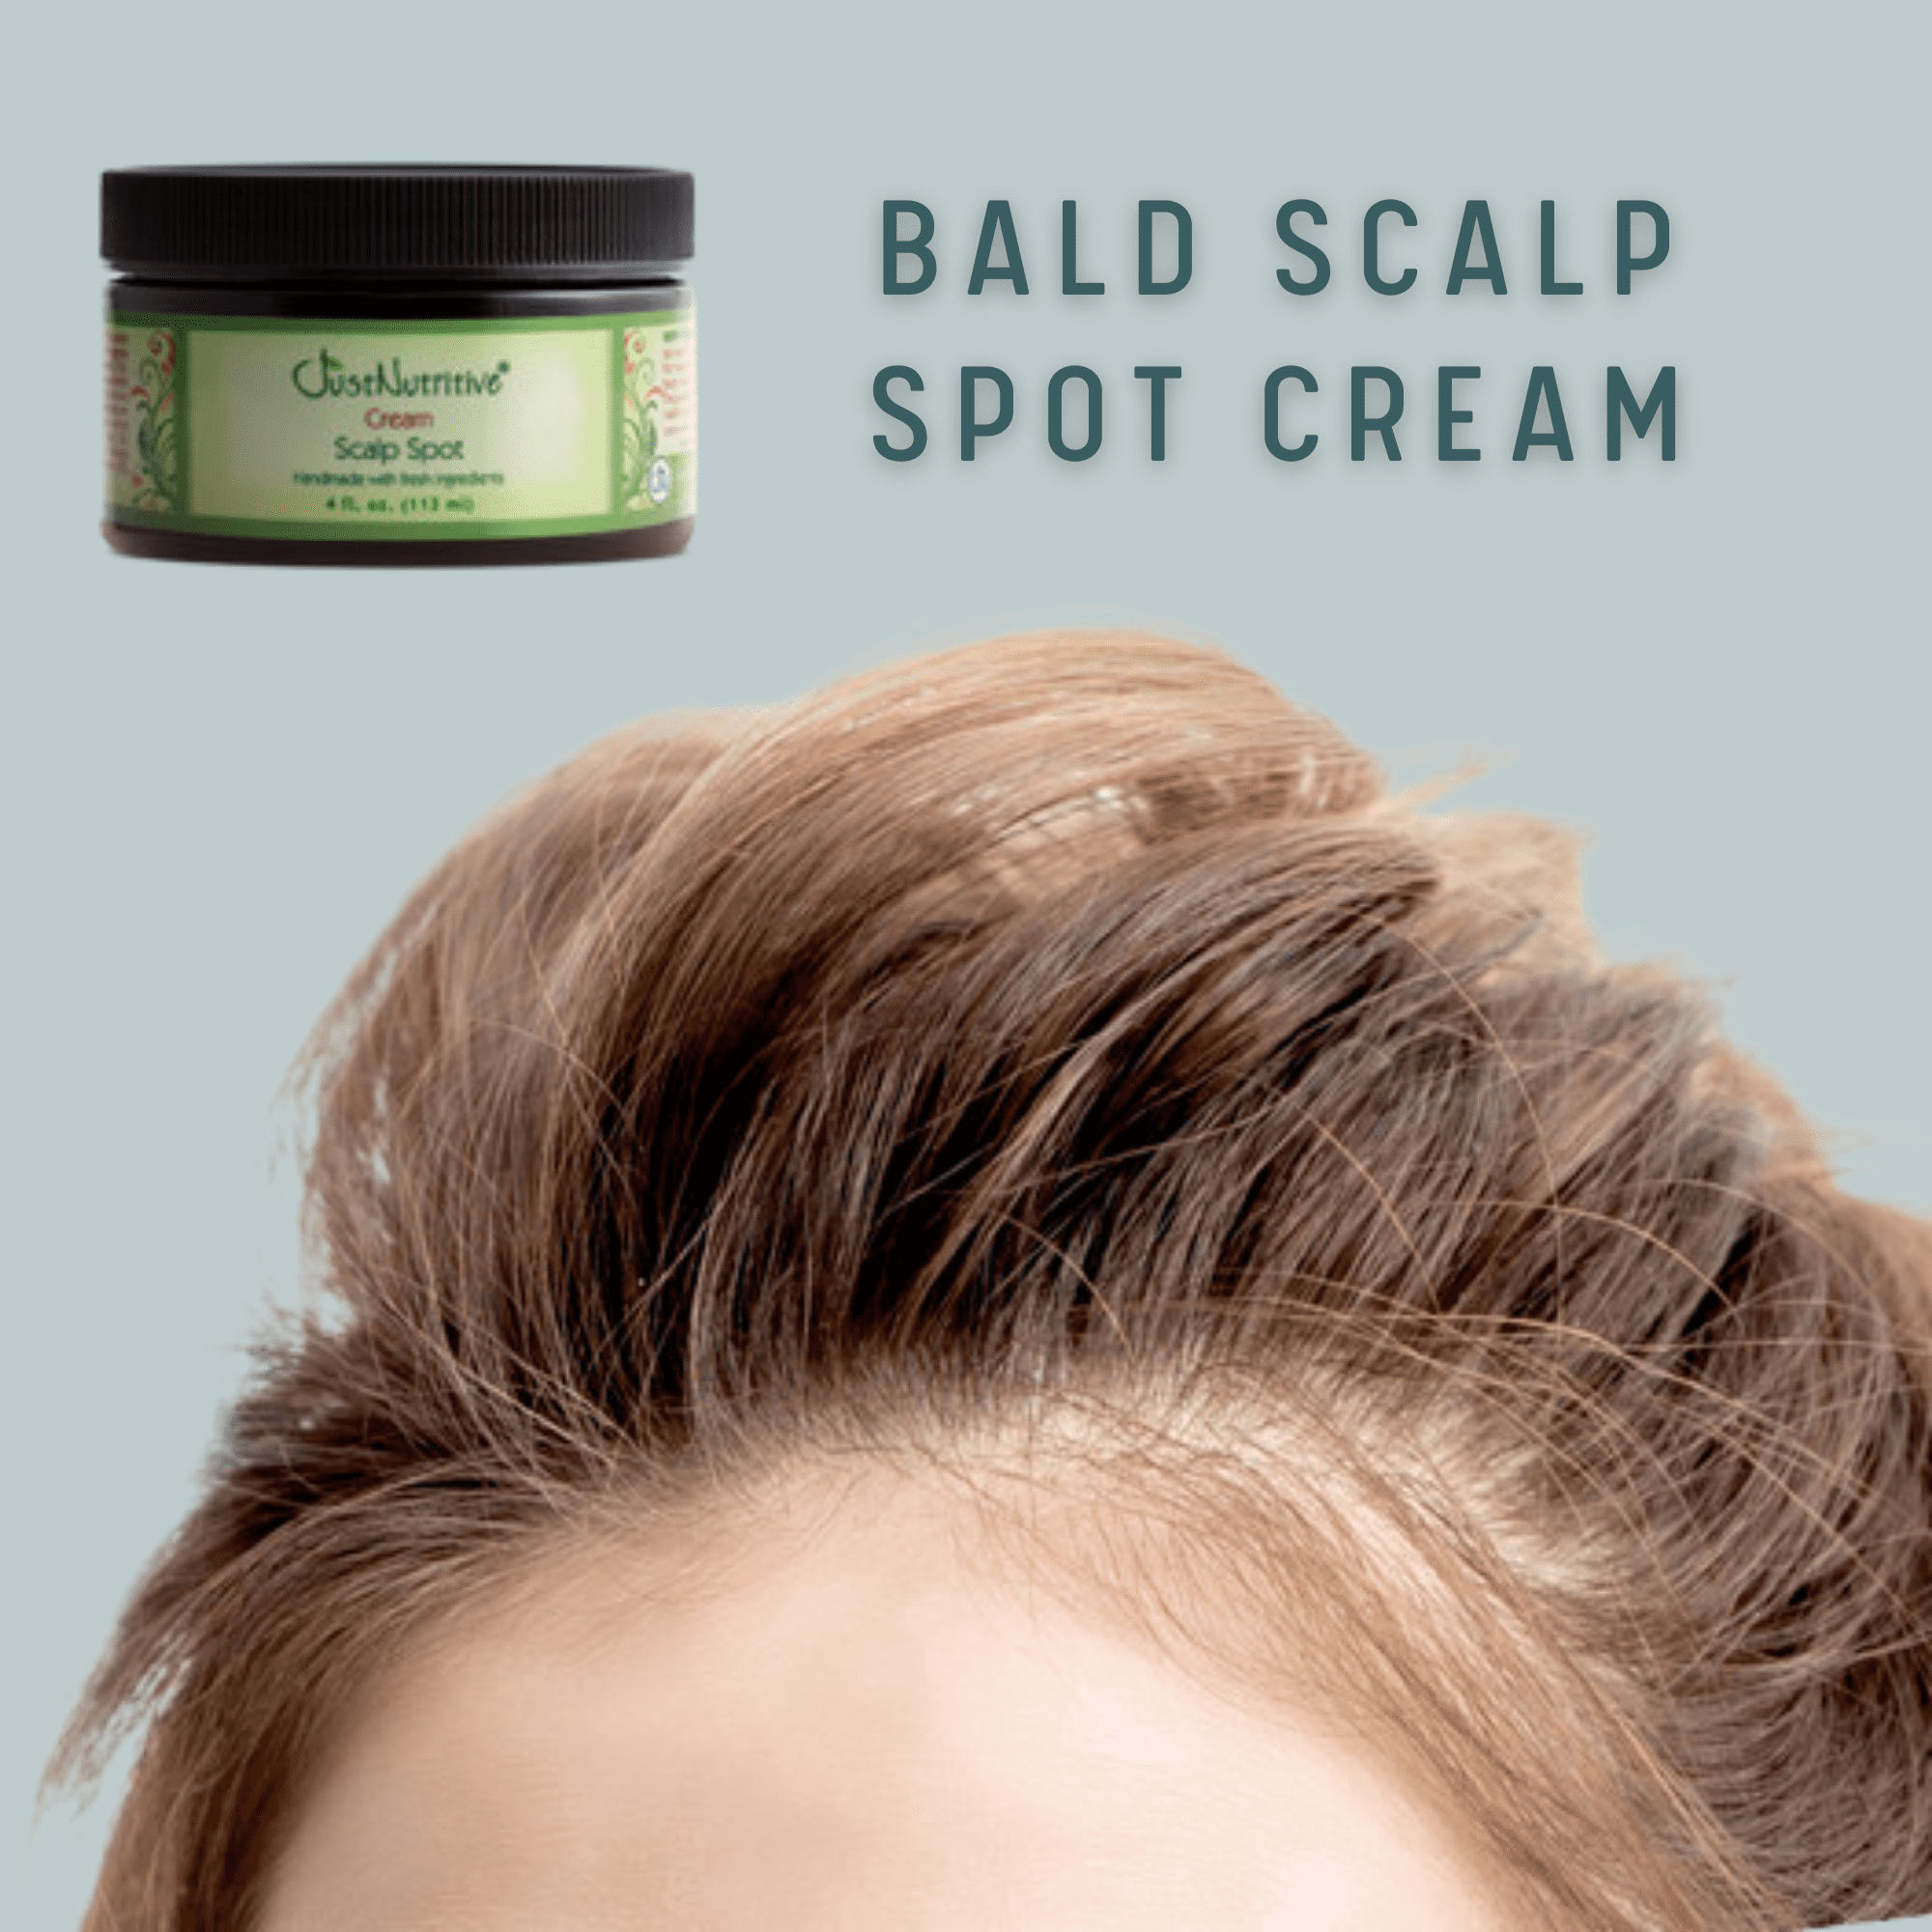 Bald Scalp Spot Cream / Bald Spot Treatment 